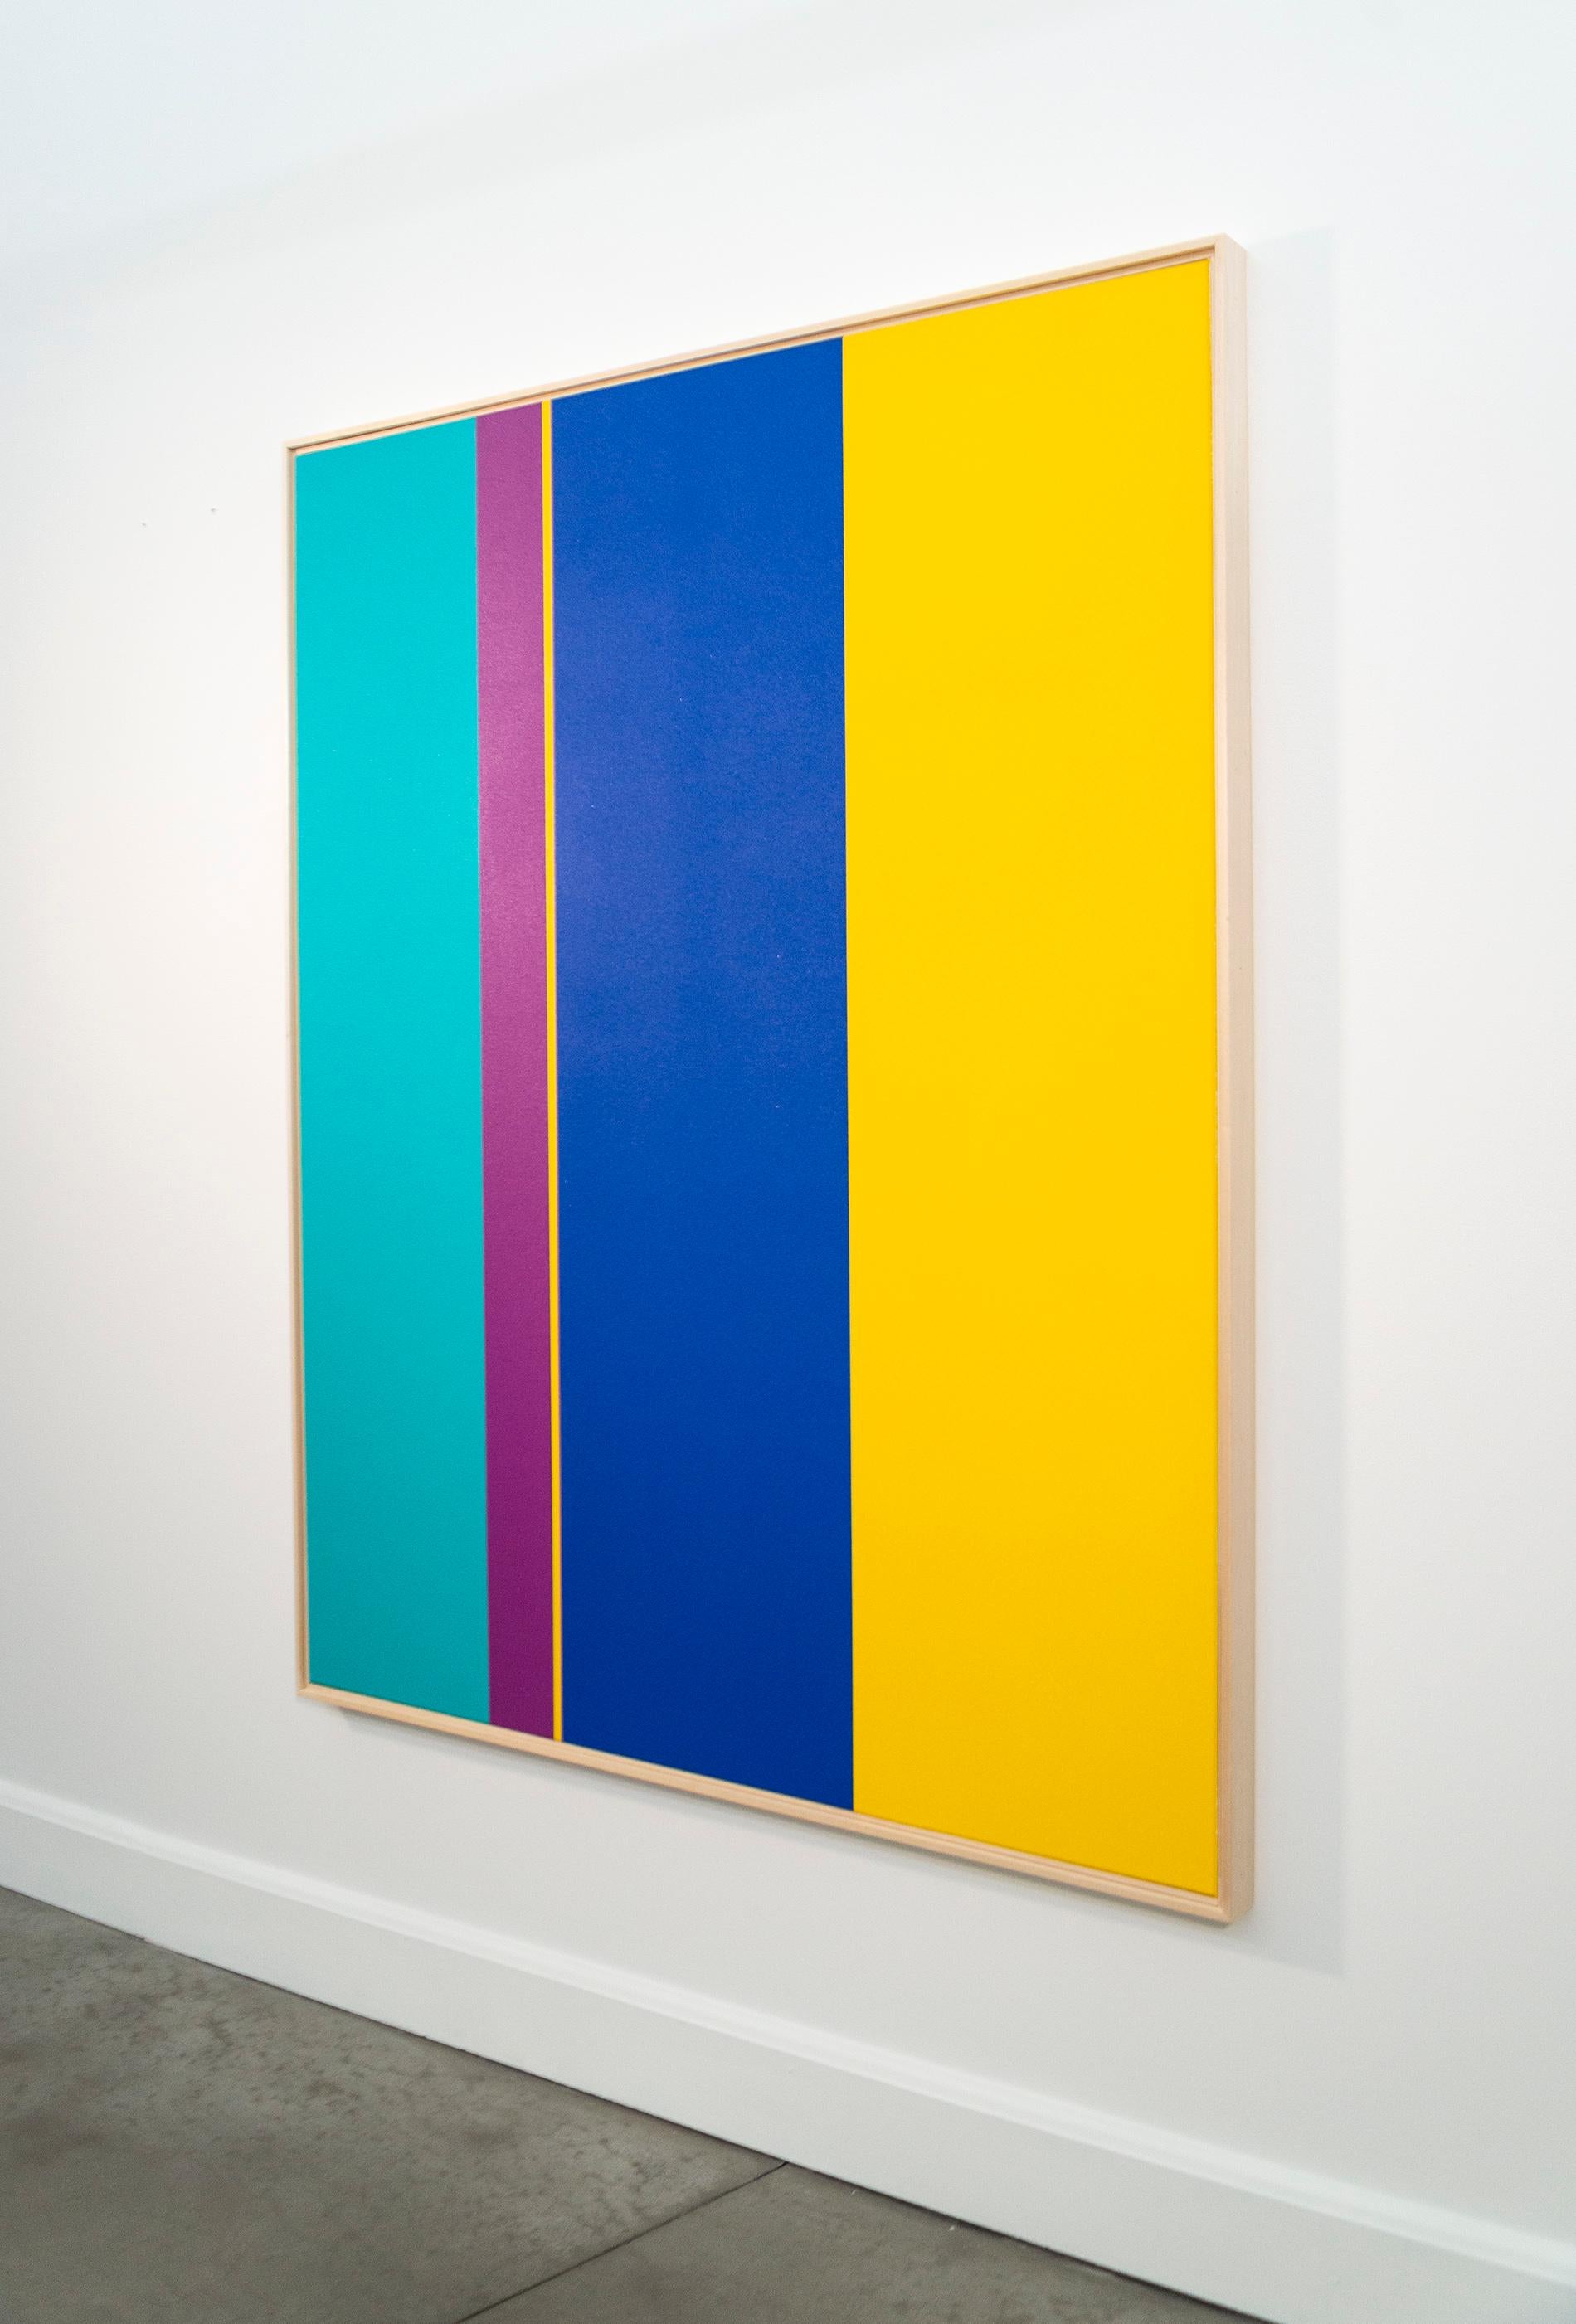 In diesem dynamischen neuen Werk von Milly Ritsvedt ziehen sich kühne vertikale Bänder aus reiner Farbe über die gesamte Länge des Bildes. Wie immer ist Ristvedts Farbwahl in diesem kantigen Werk meisterhaft - Türkis, tiefes Pink, Blau und